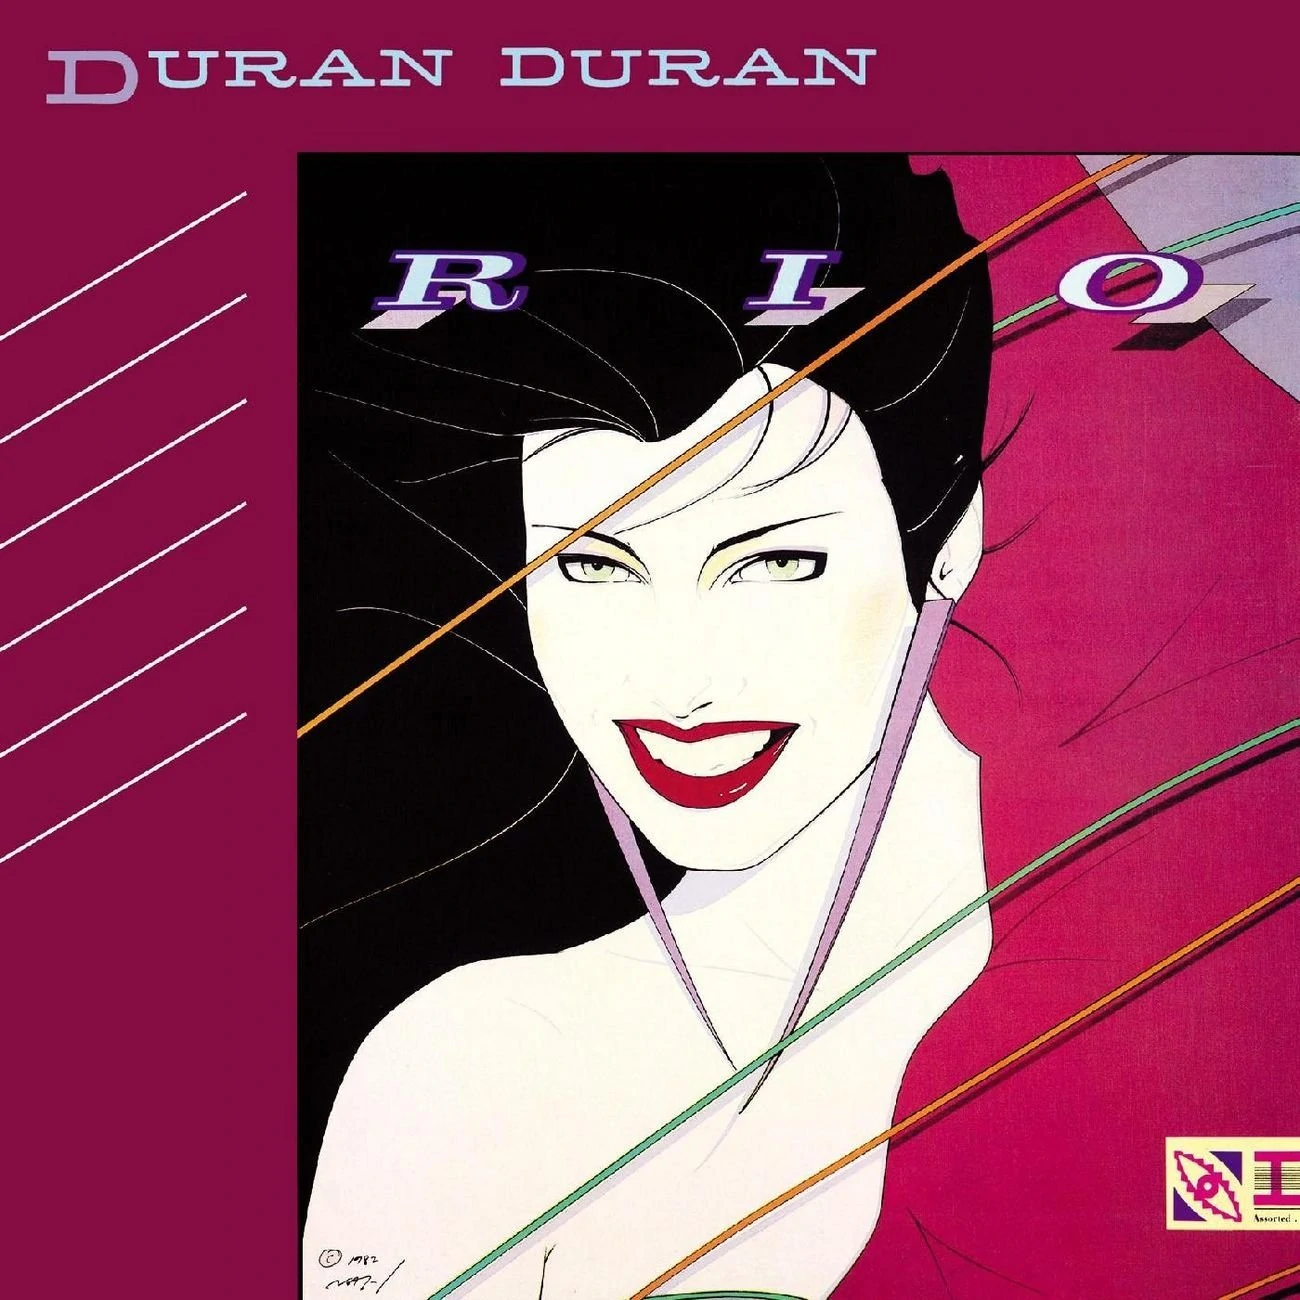 Duran Duran The Chauffeur cover artwork